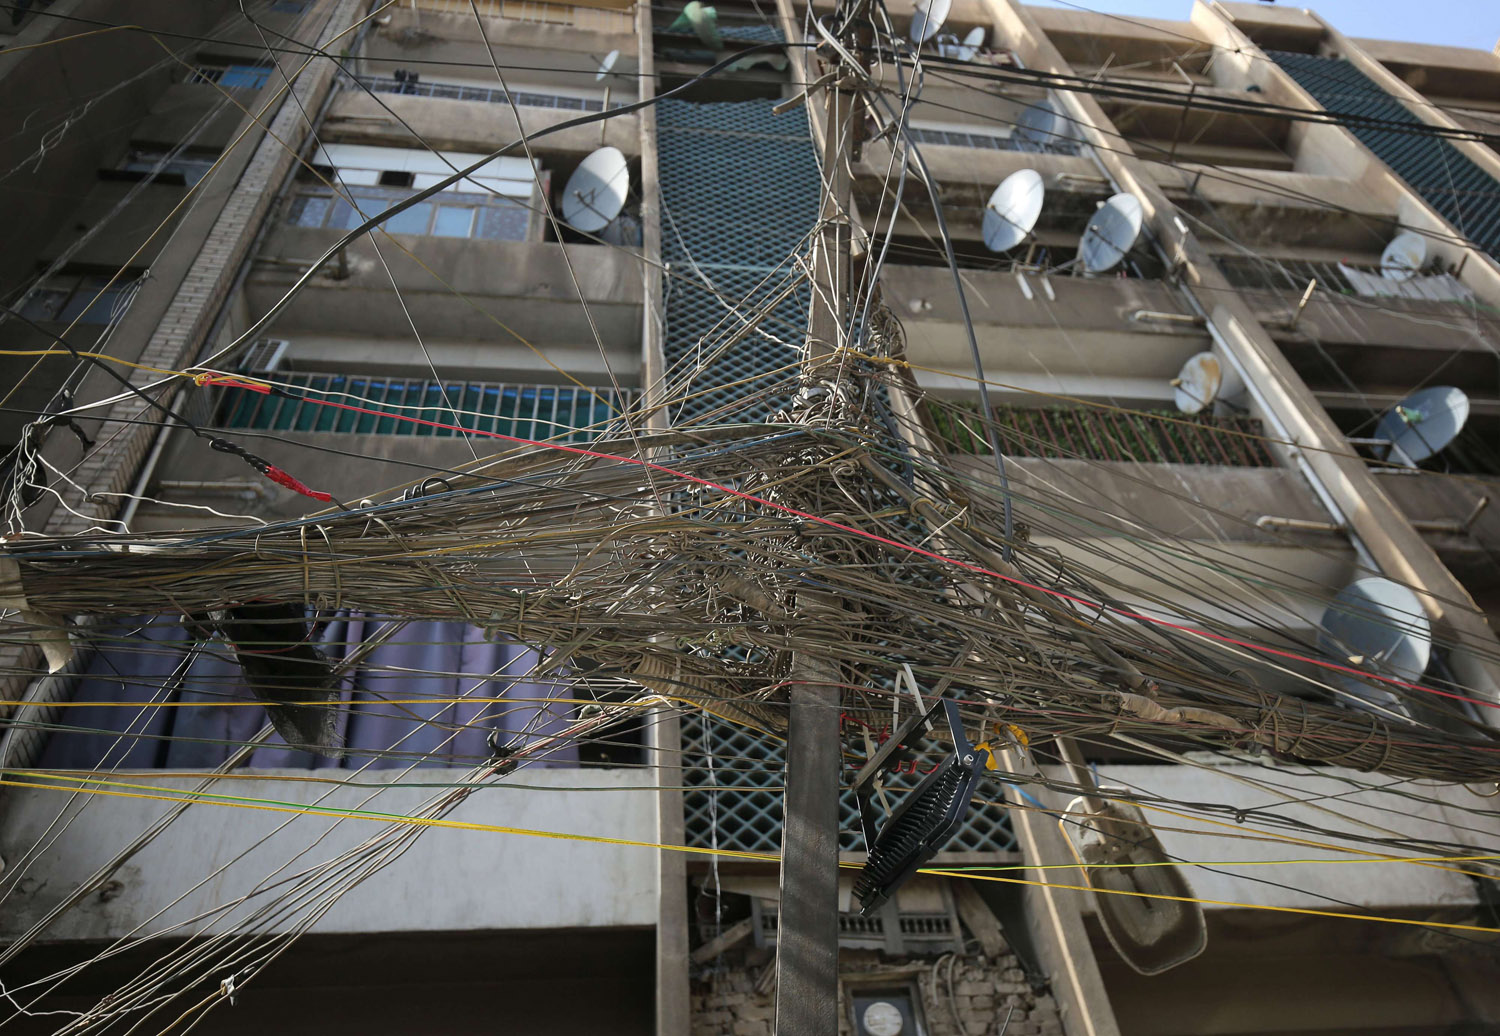 واجهة مبنى في بغداد تتشابك أمامها توصيلات الكهرباء من مولدات خاصة